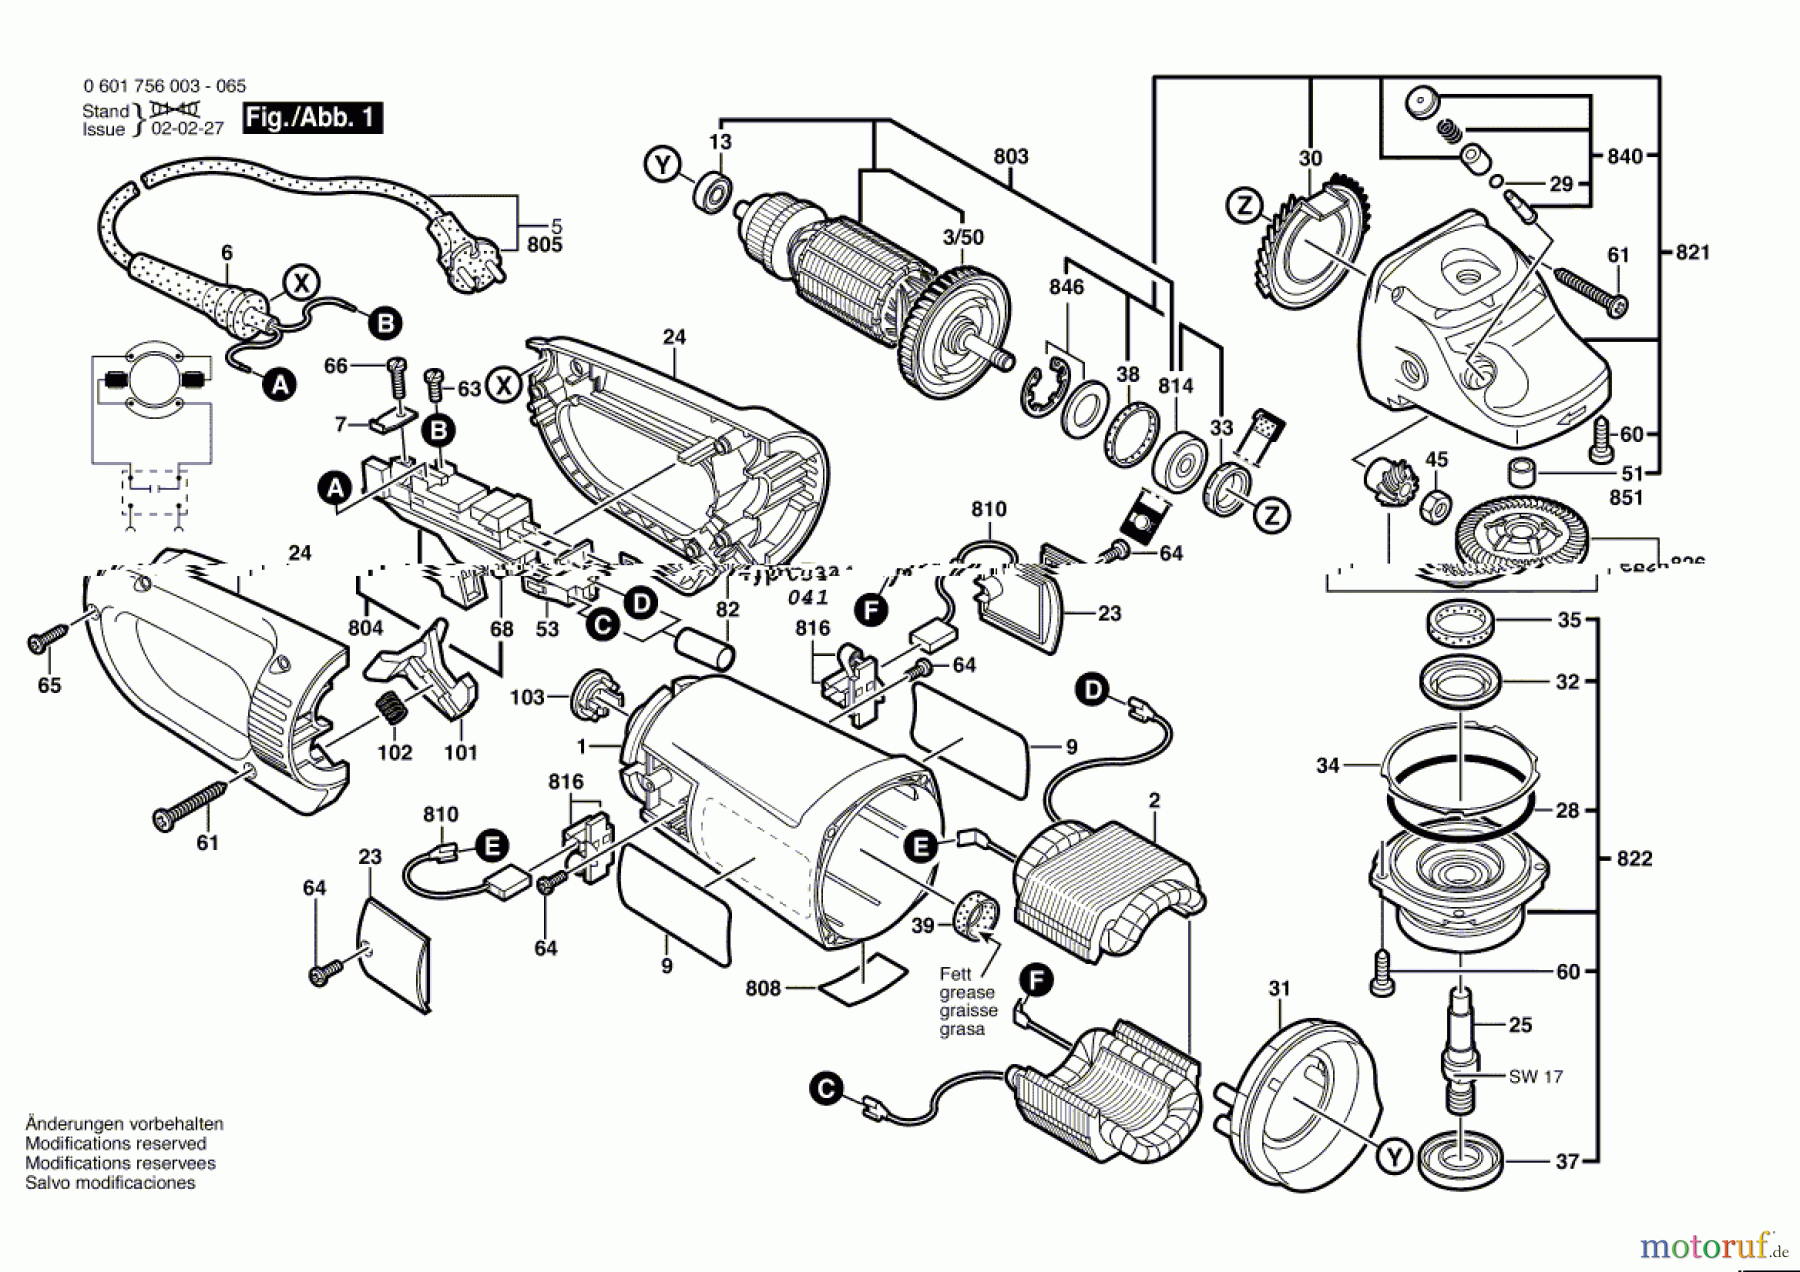  Bosch Werkzeug Winkelschleifer GWS 25-230 Seite 1